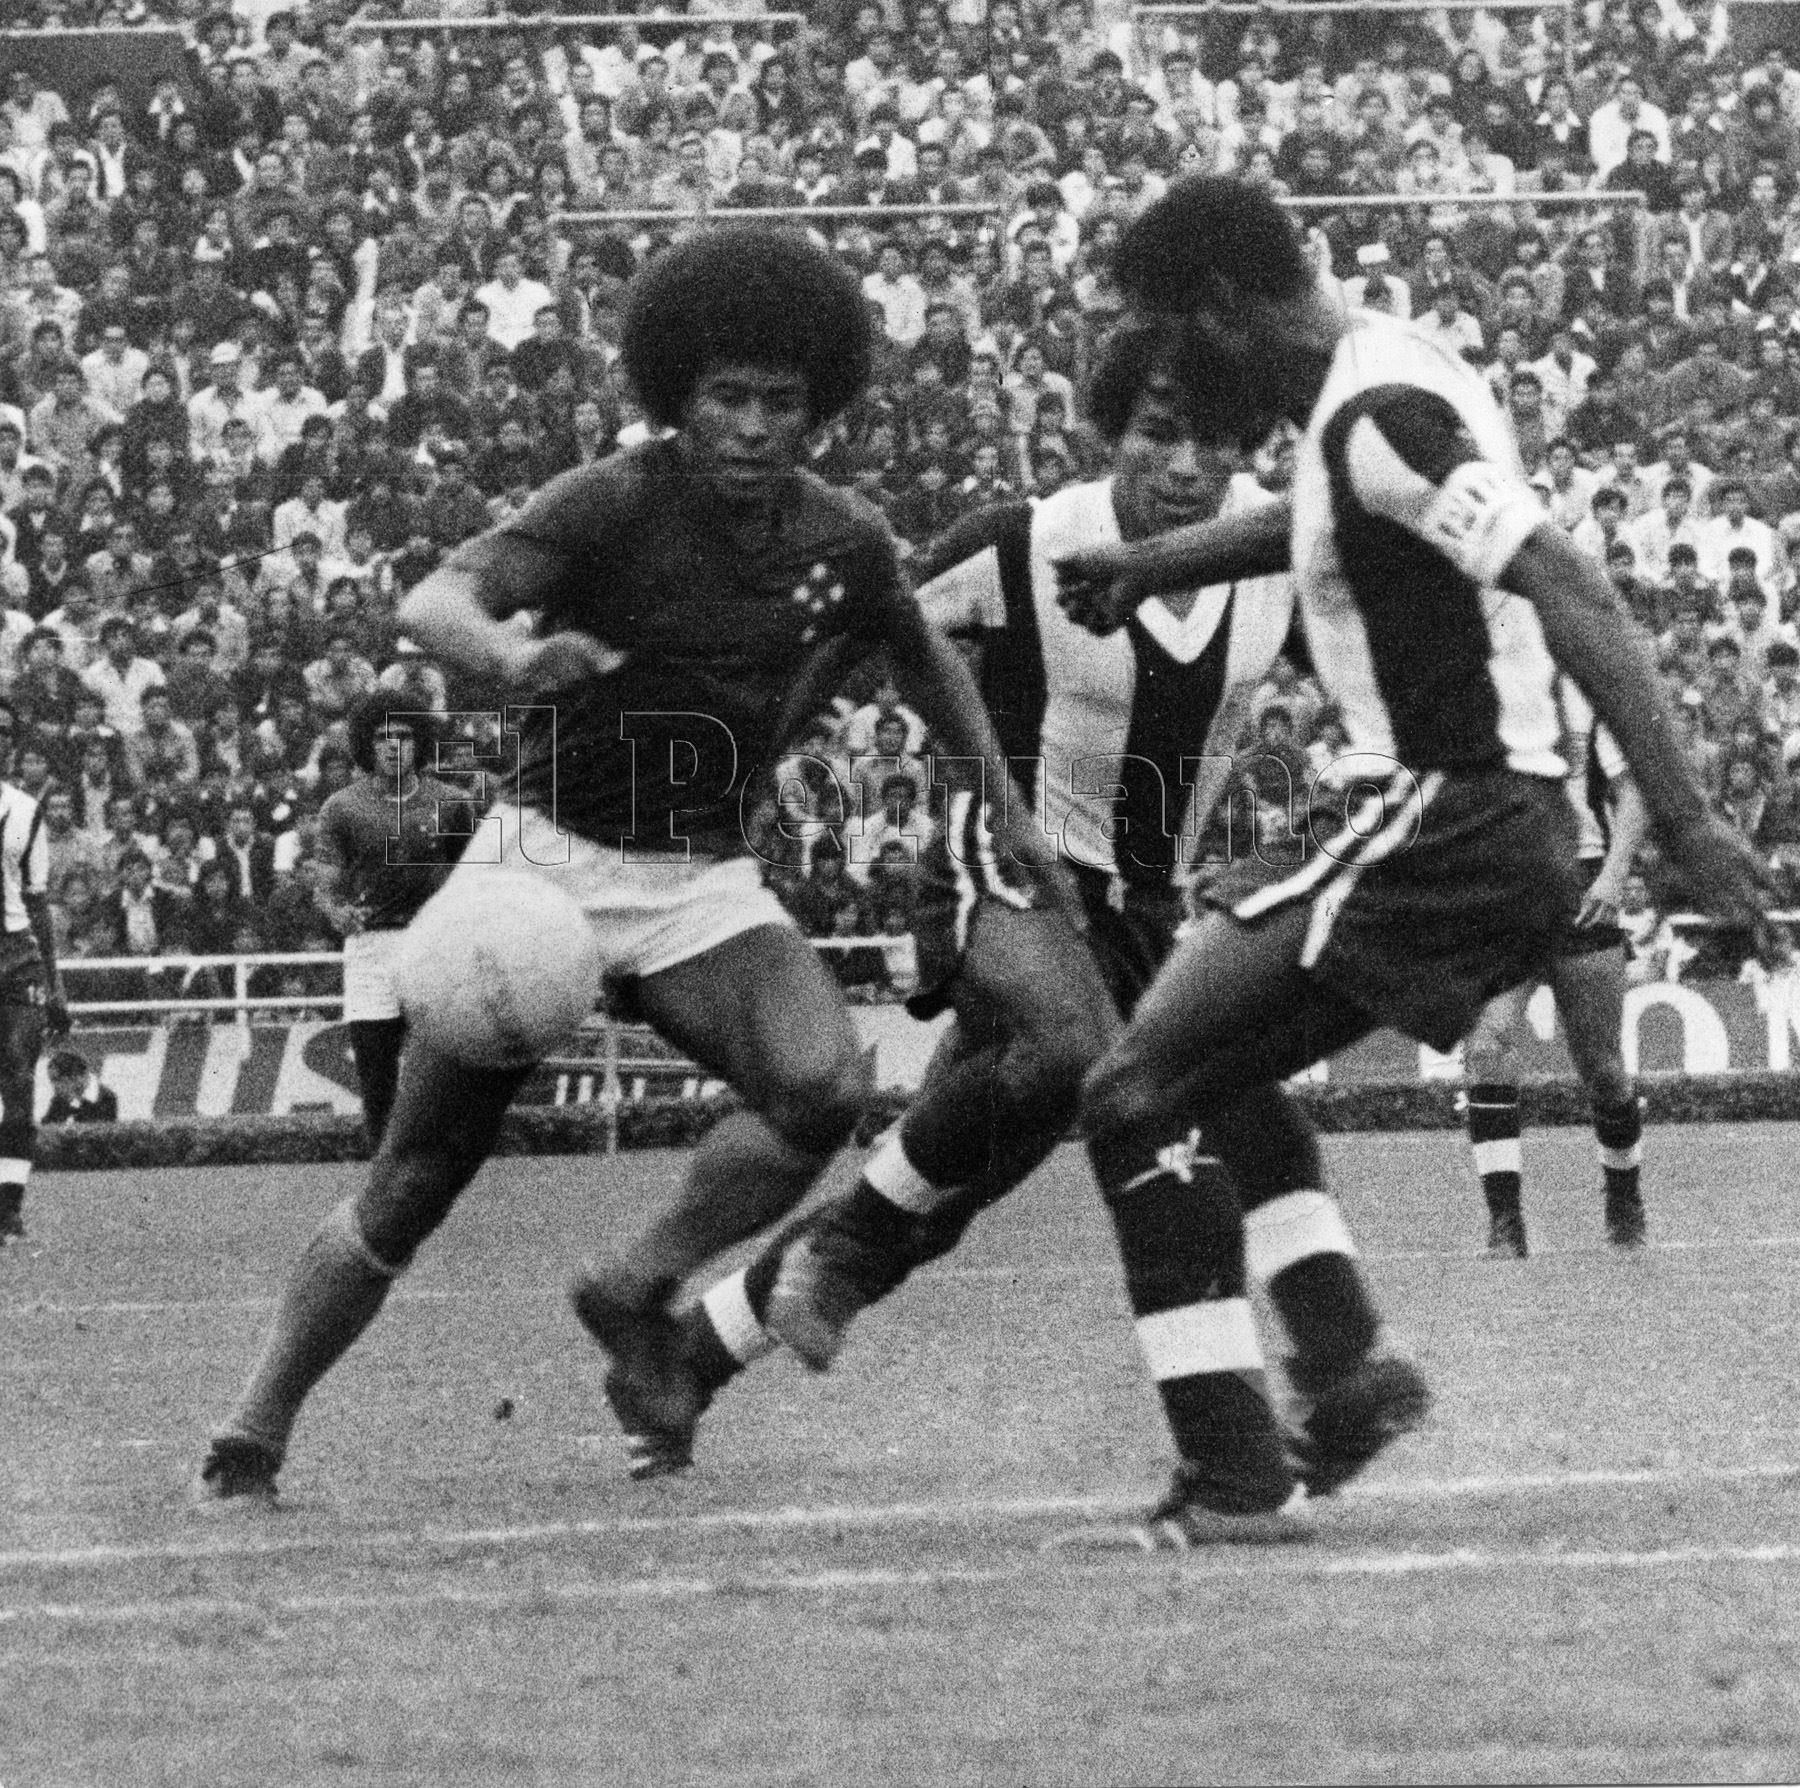 Jairzinho – Brasil. Nueve goles en 16 partidos. Participó en los mundiales de 1966, 1970 y 1974. Fue campeón en México 1970.